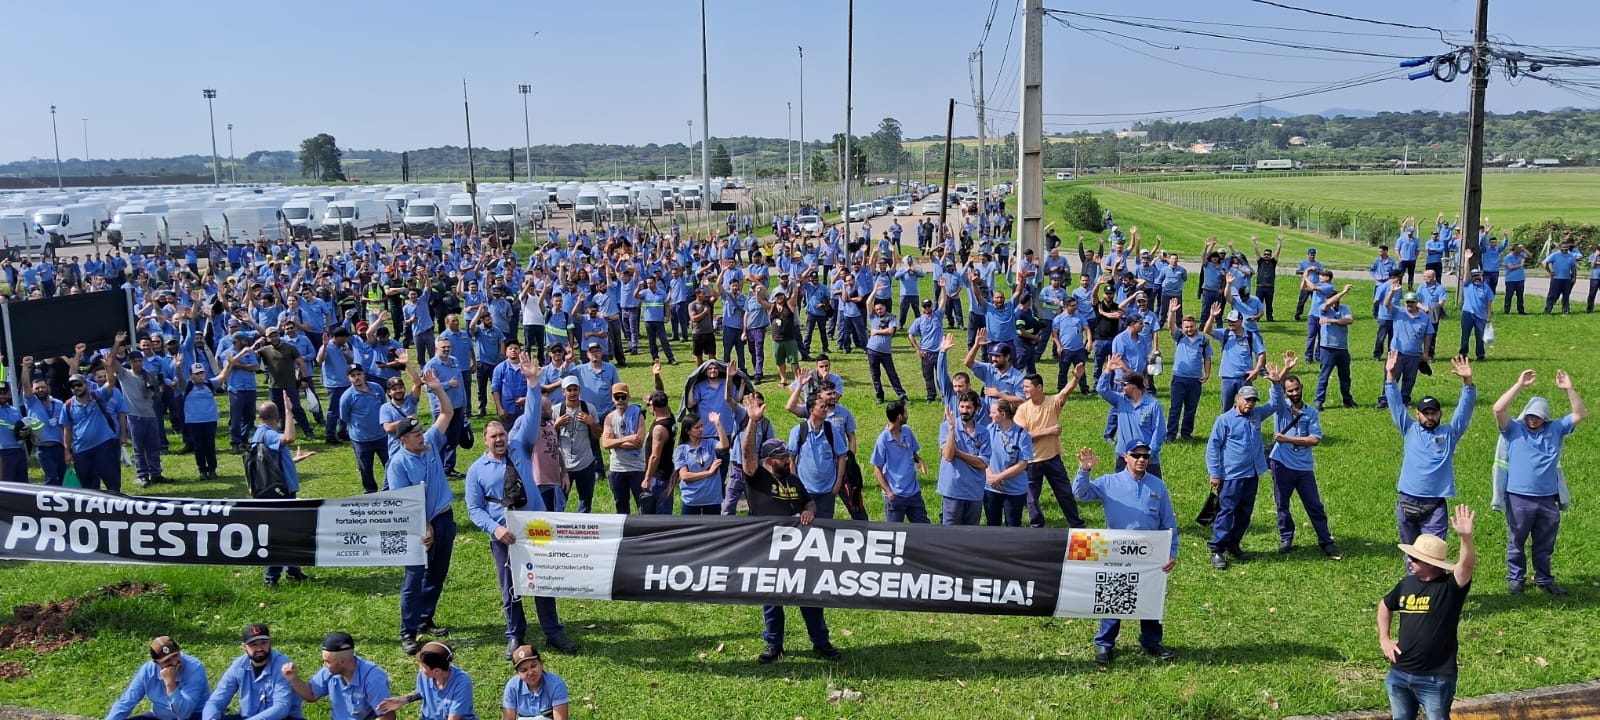 Renault: Metalúrgicos aprovam paralisação de 1 dia em protesto contra falta de segurança na linha de produção